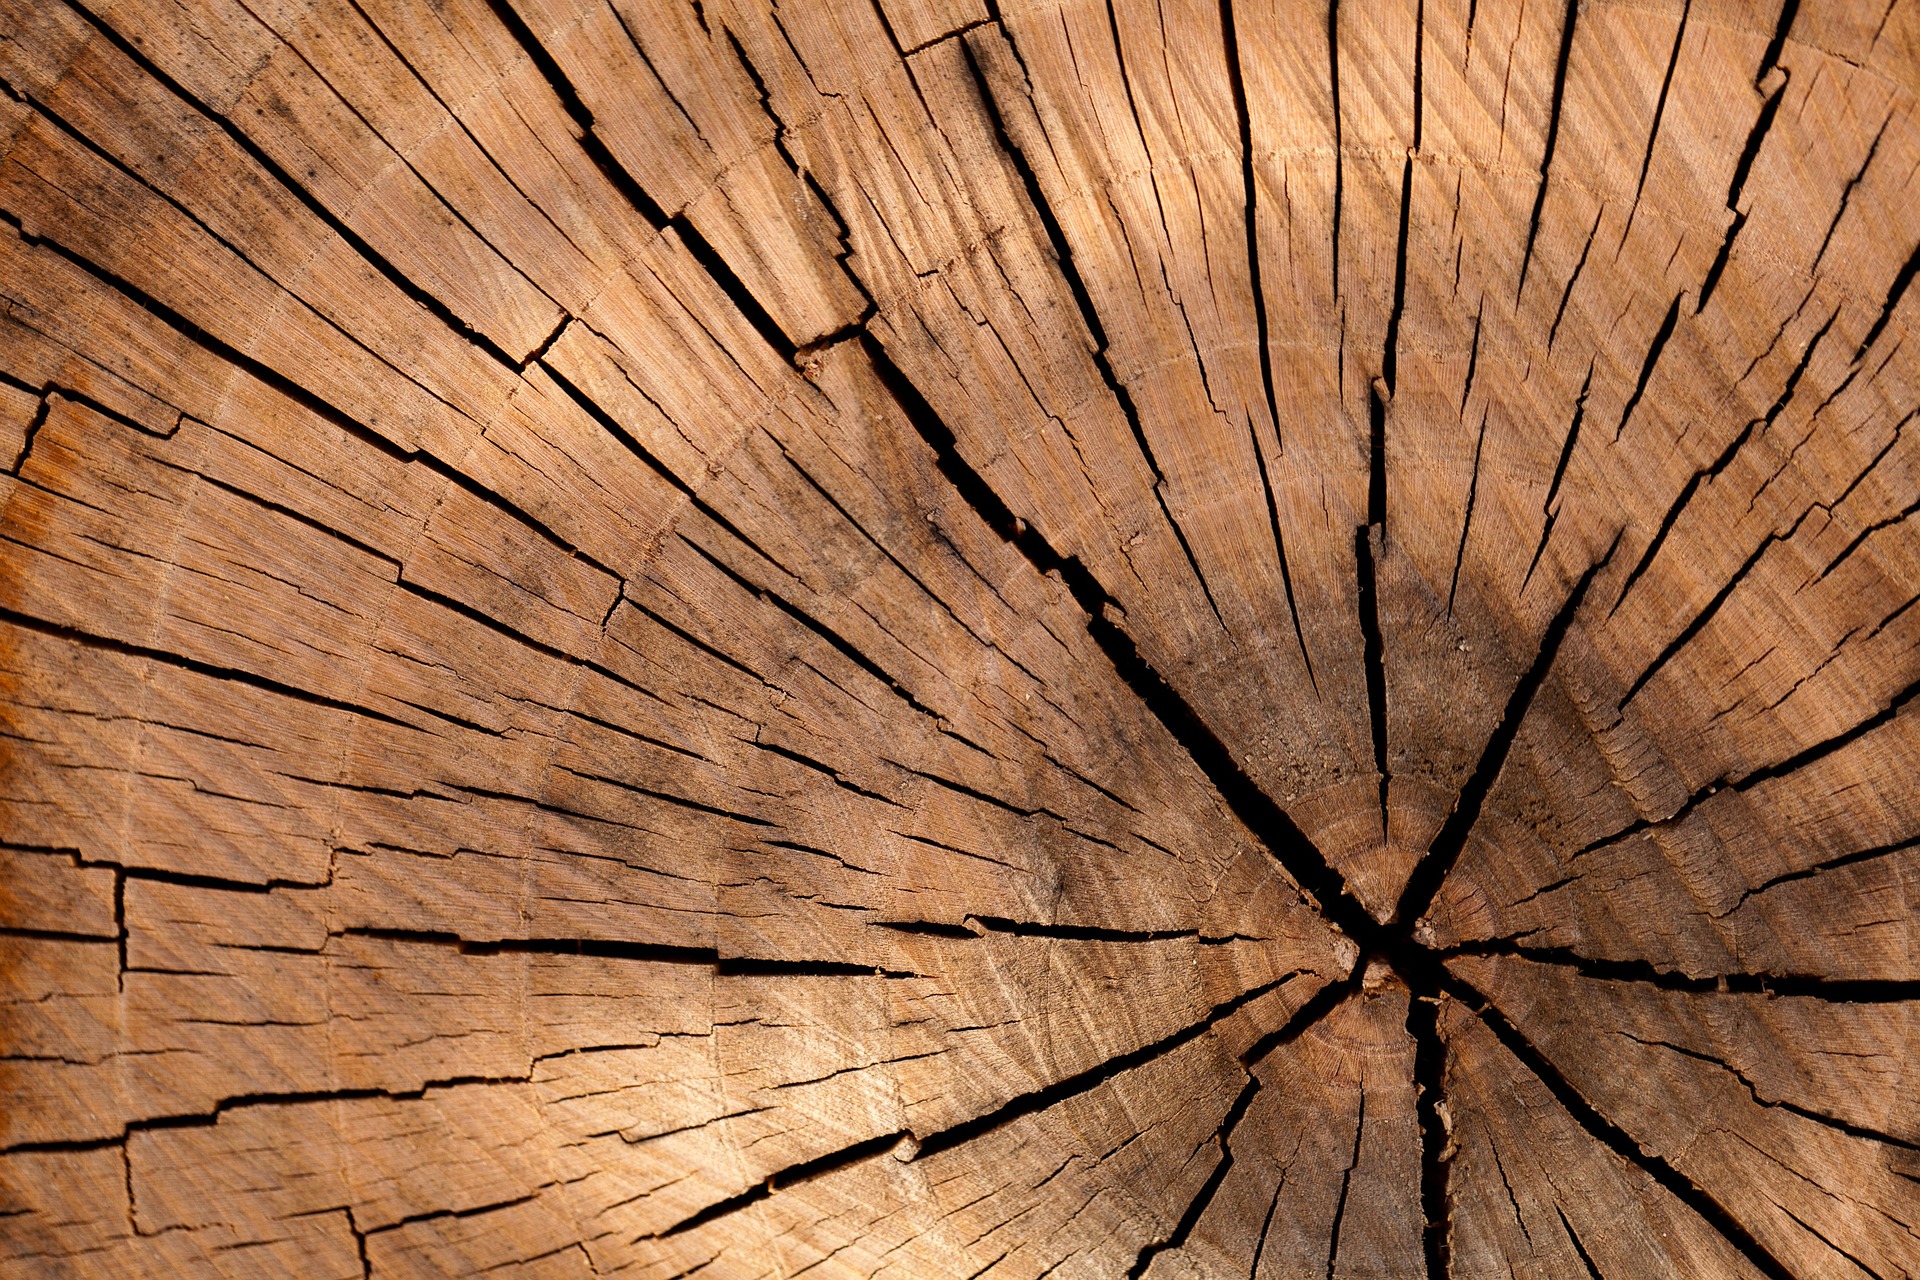 Jakie gatunki drewna nadają się do budowy zadaszenia tarasu?